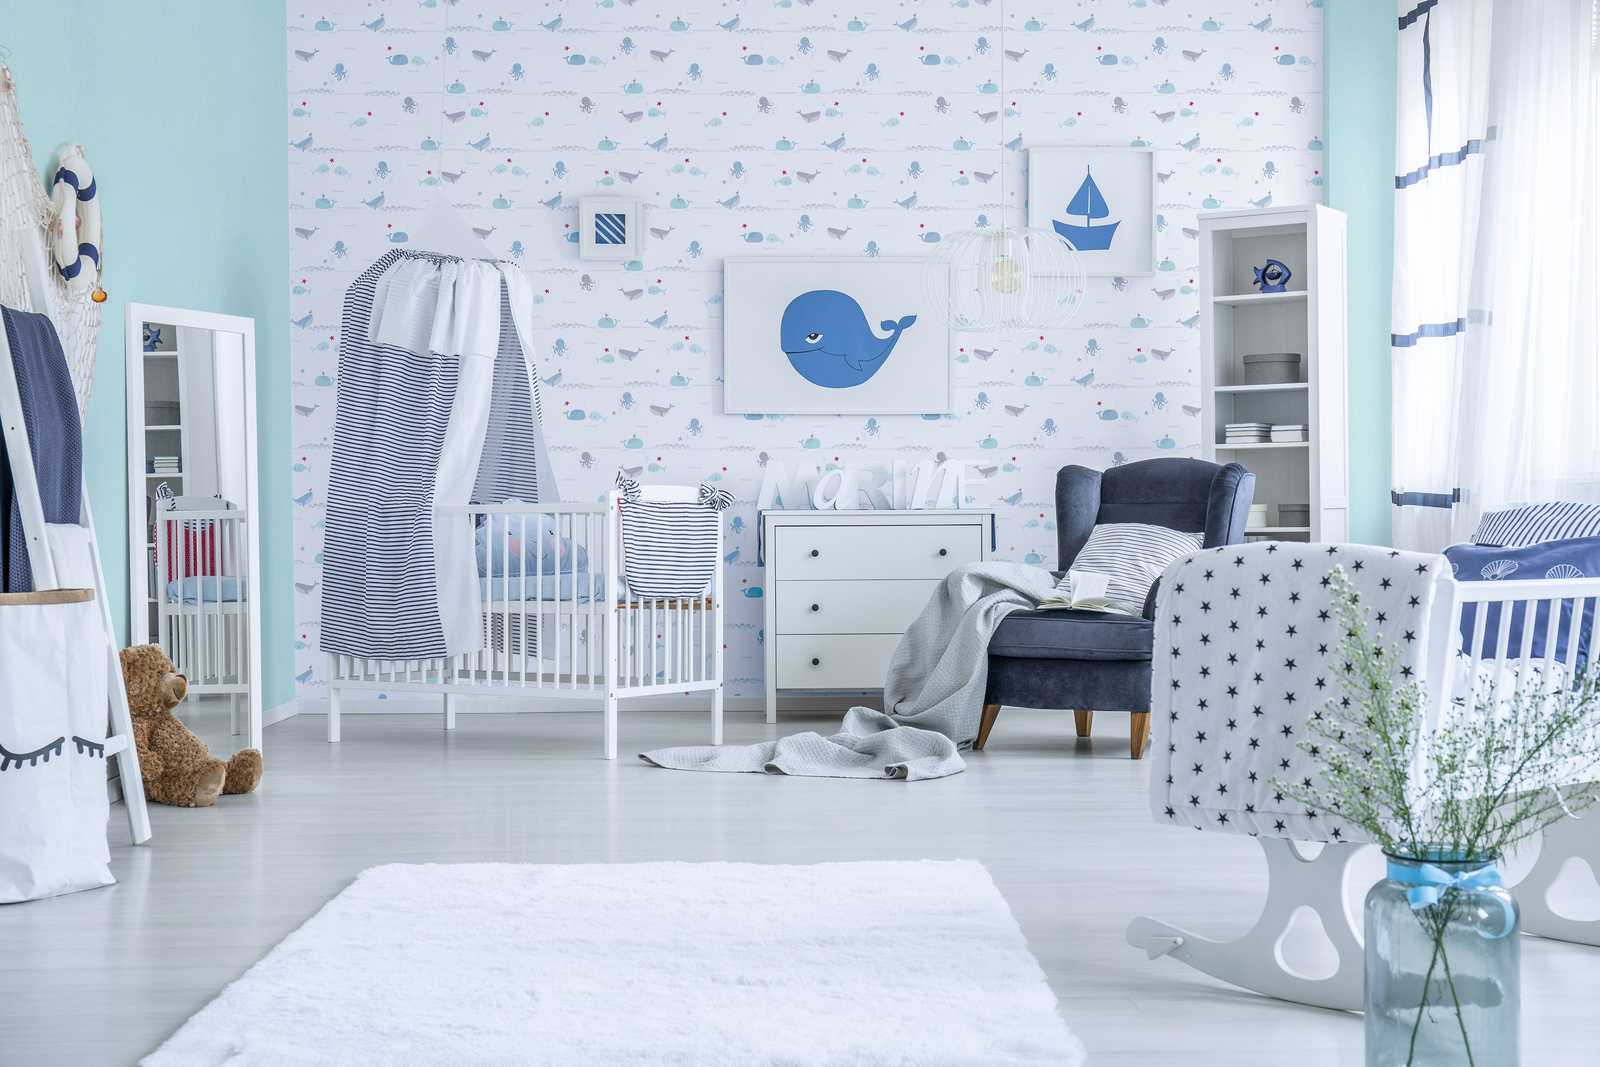             Papier peint chambre enfants animaux marins - bleu, gris, blanc
        